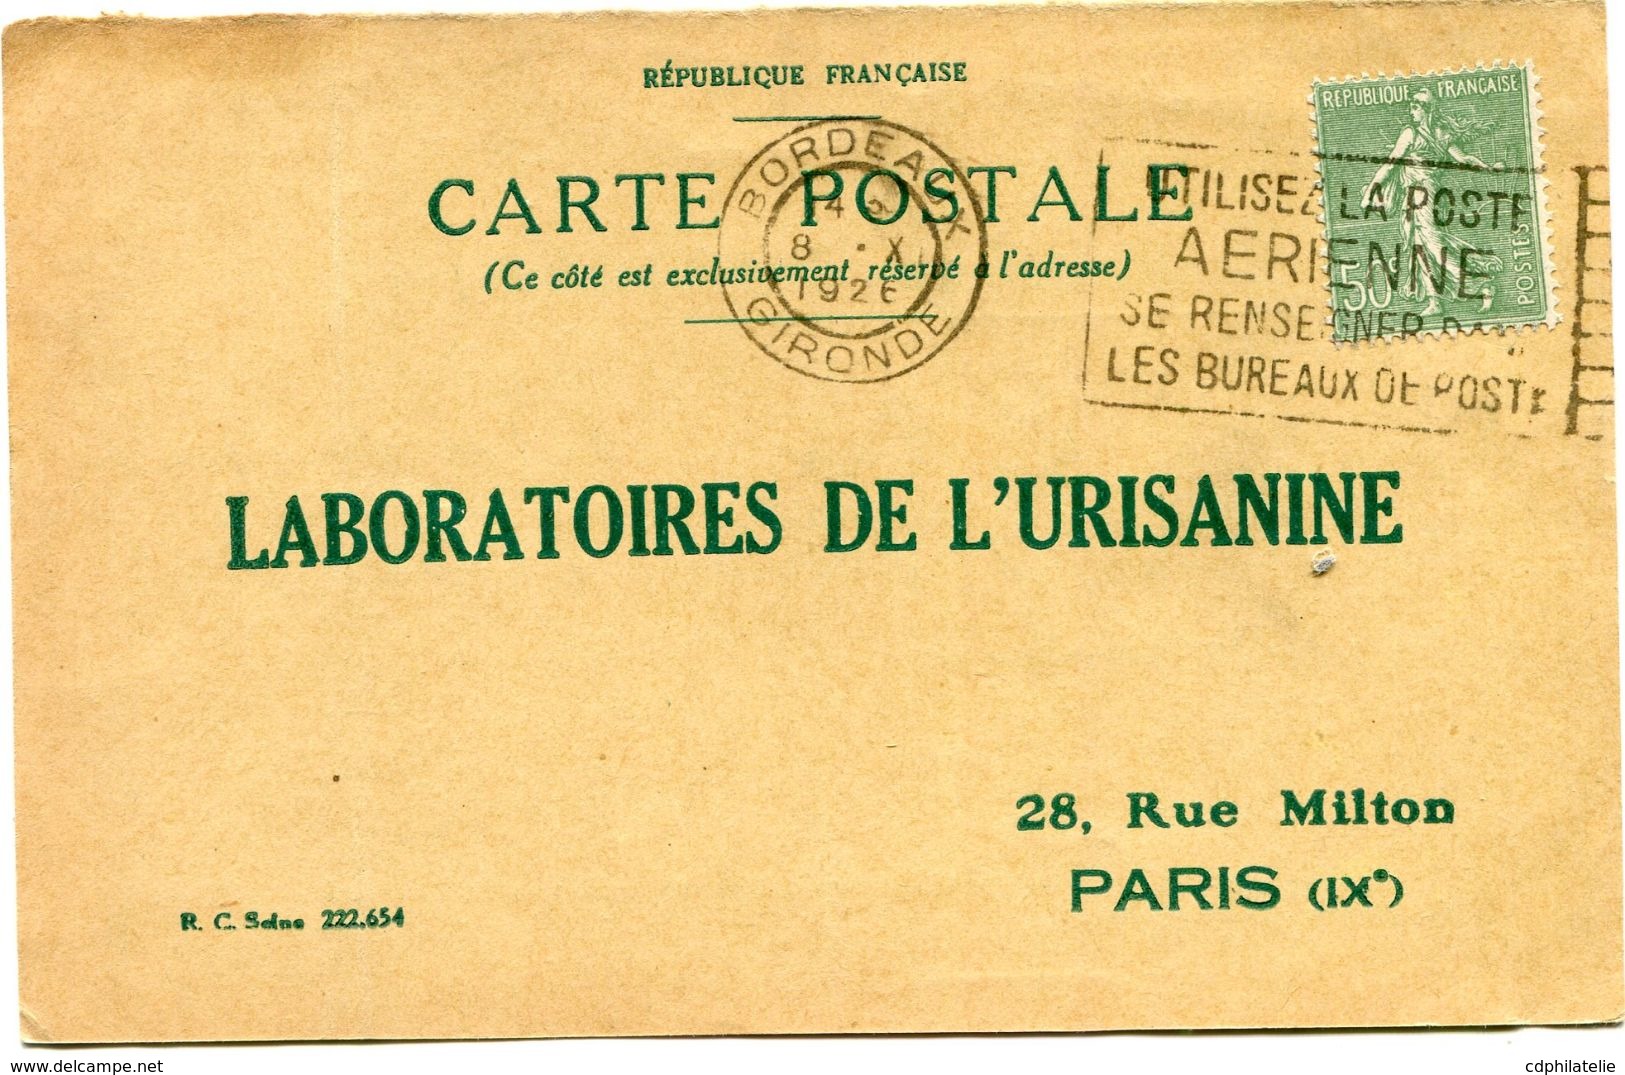 FRANCE CARTE POSTALE BON POUR UN FLACON ECHANTILLON D'URISANINE DEPART BORDEAUX 8 X 1926 POUR LA FRANCE - 1903-60 Sower - Ligned